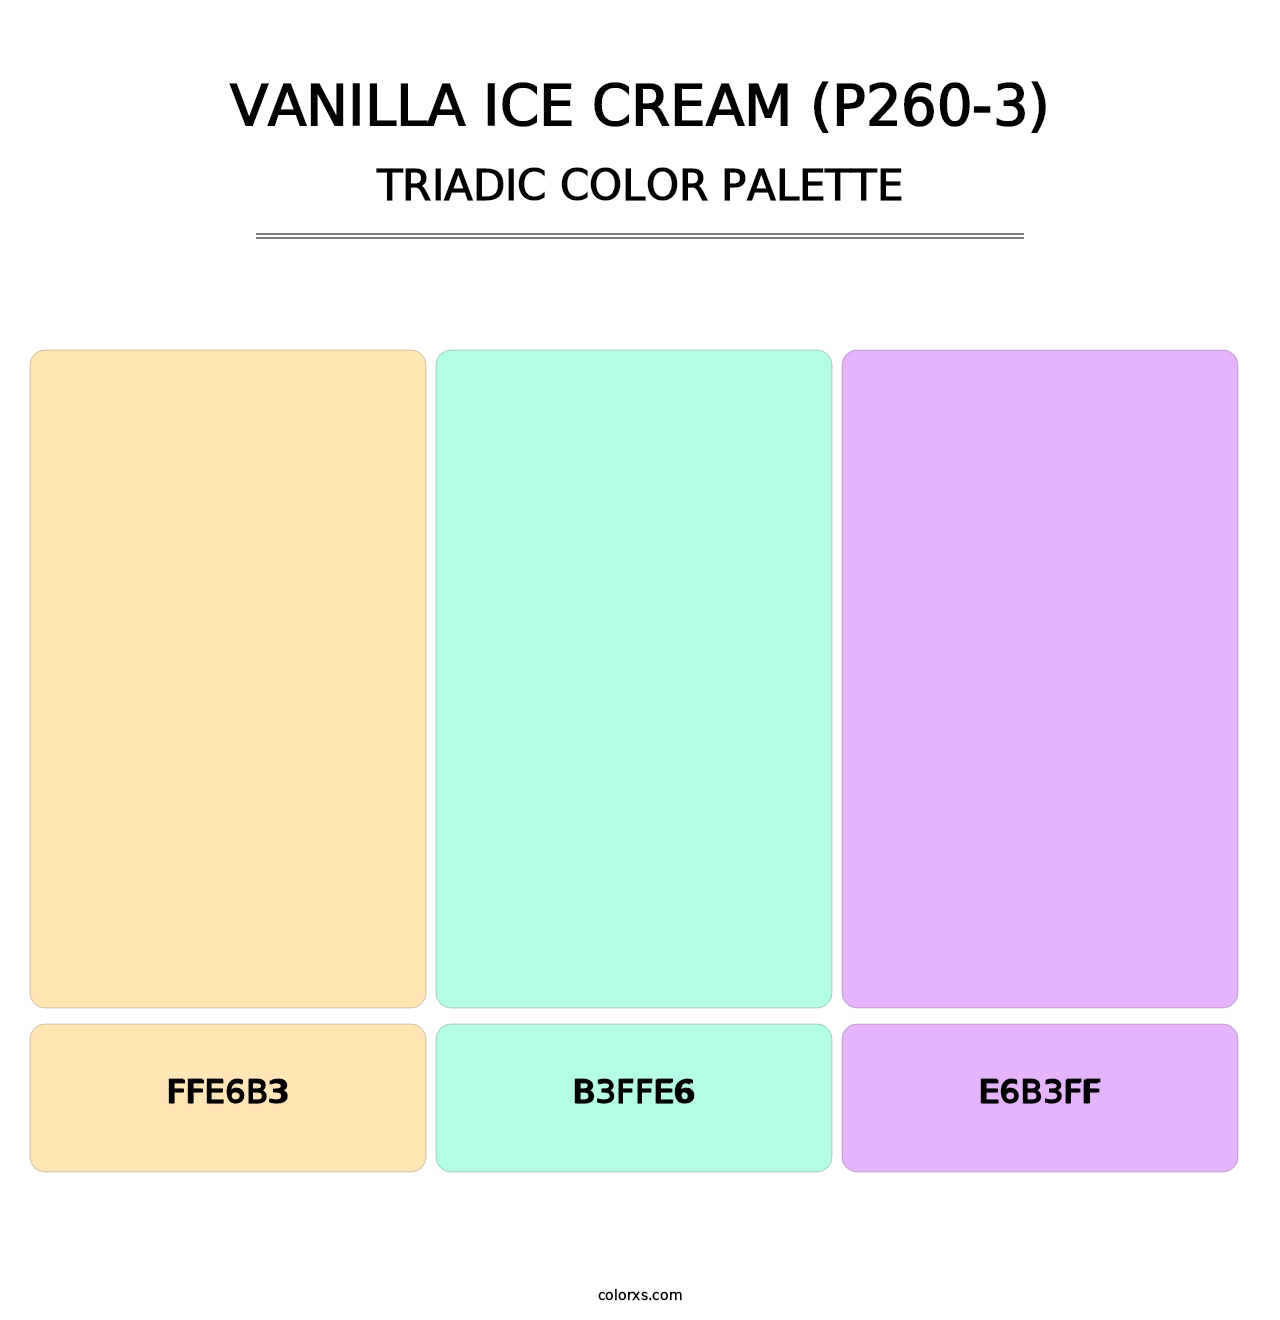 Vanilla Ice Cream (P260-3) - Triadic Color Palette